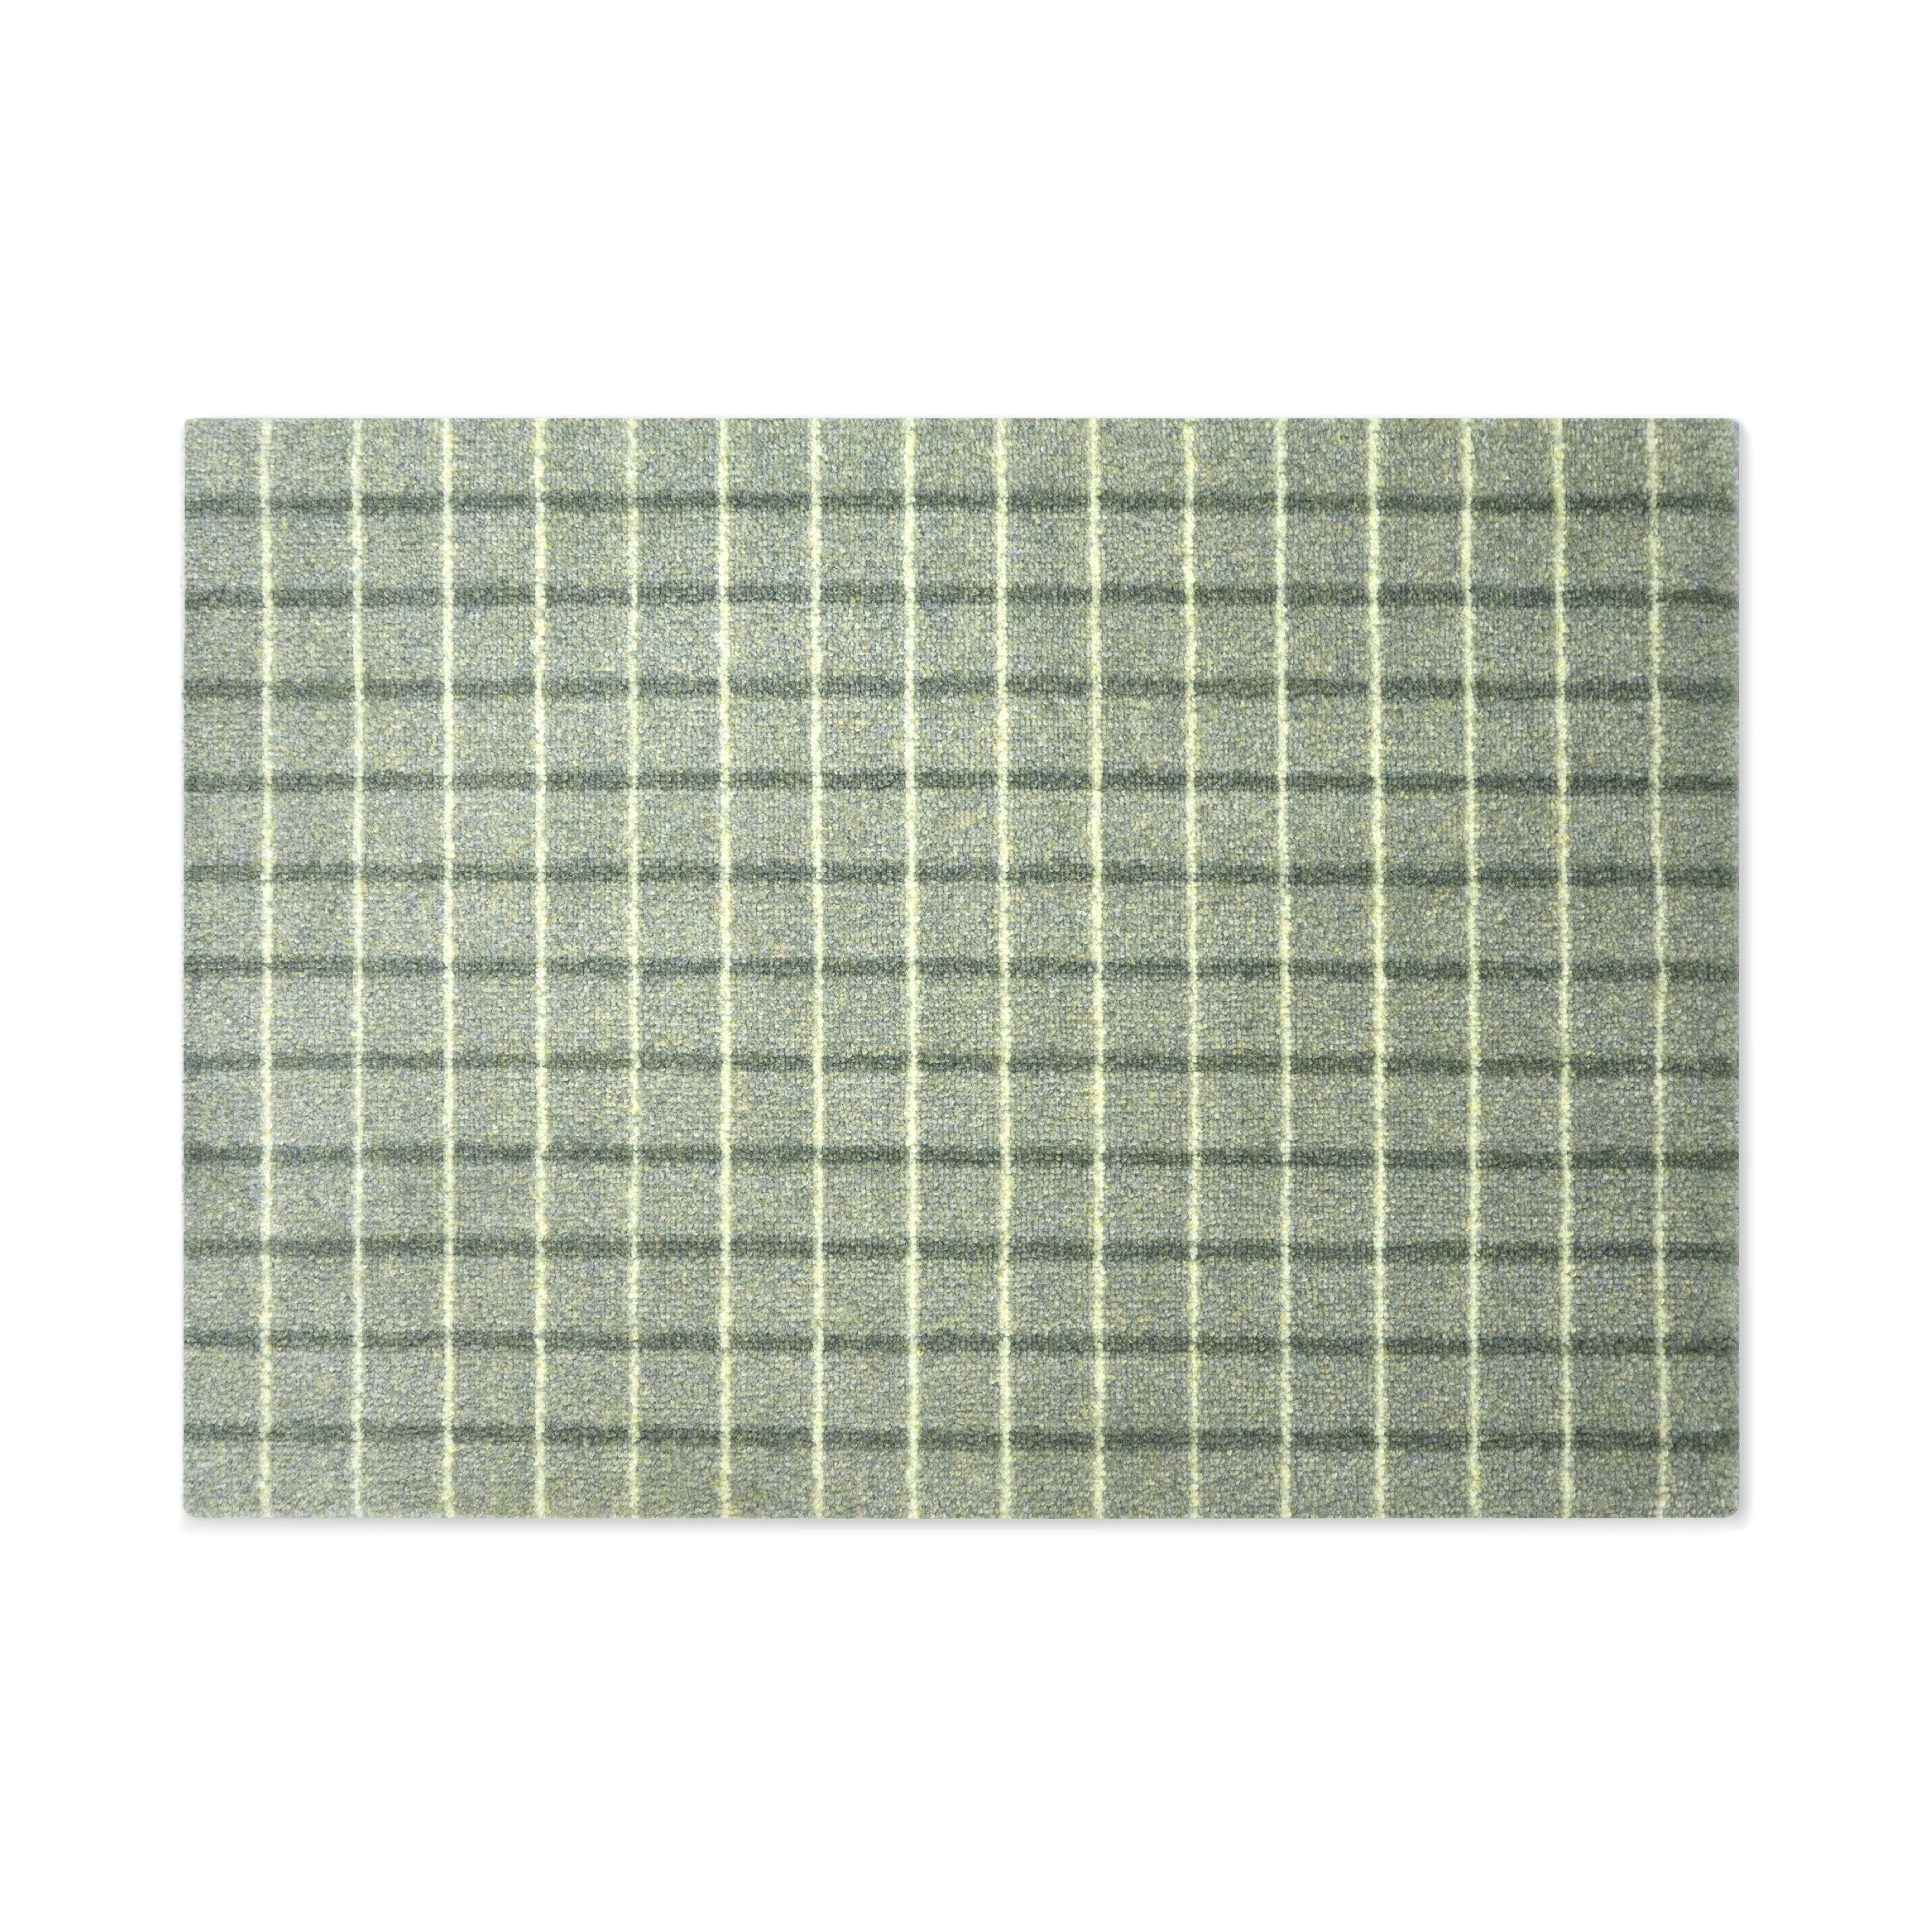 Heymat Grid Doormat Matcha Lemon, 60x85 Cm